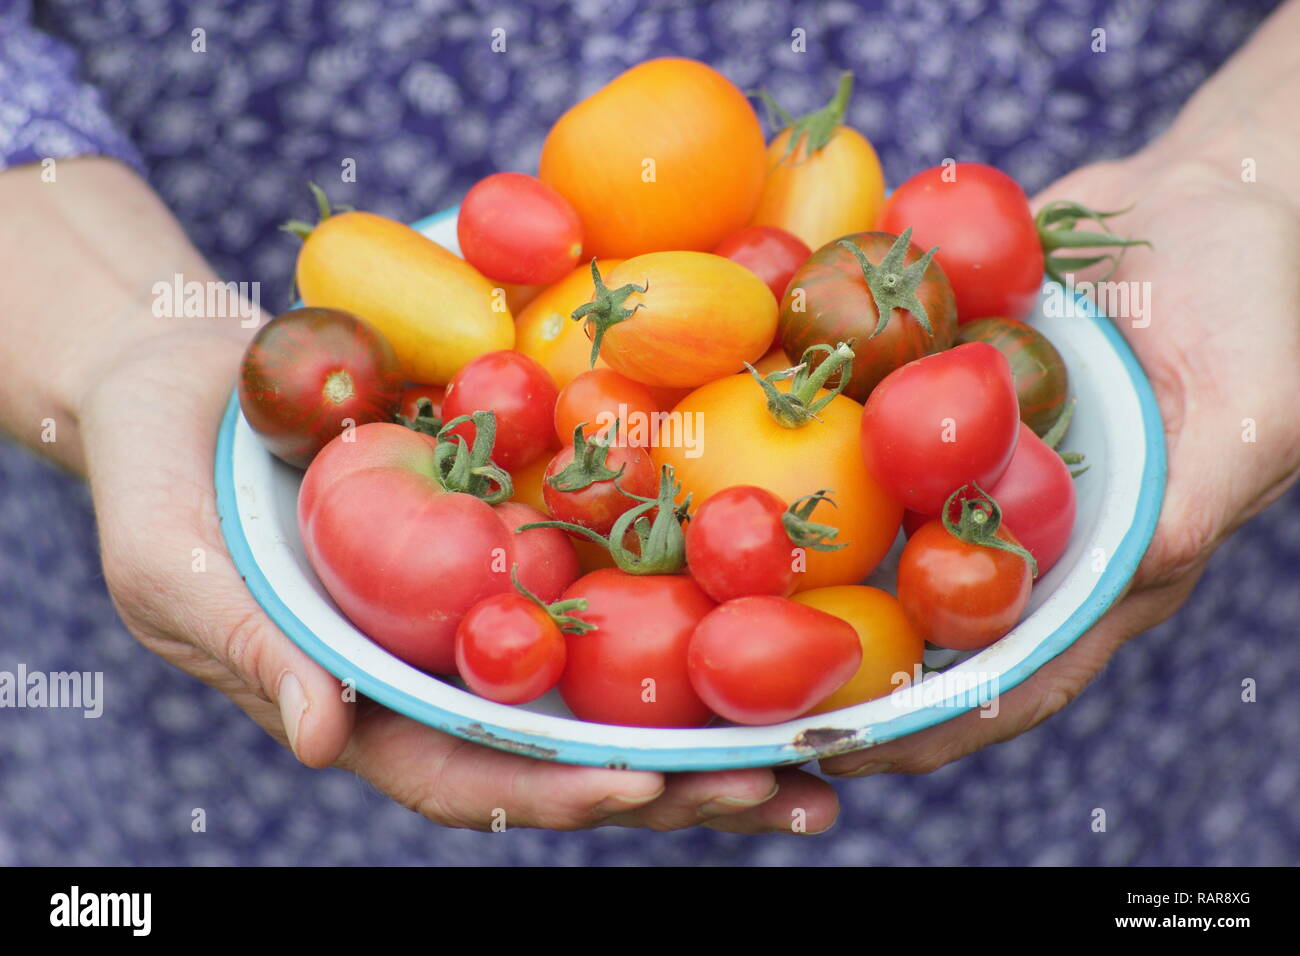 Solanum lycopersicum. La donna presenta appena preso cimelio di pomodori in un piatto. Nella foto includono Darby striped,Chadwick cherry red Pera & Tibet apple Foto Stock